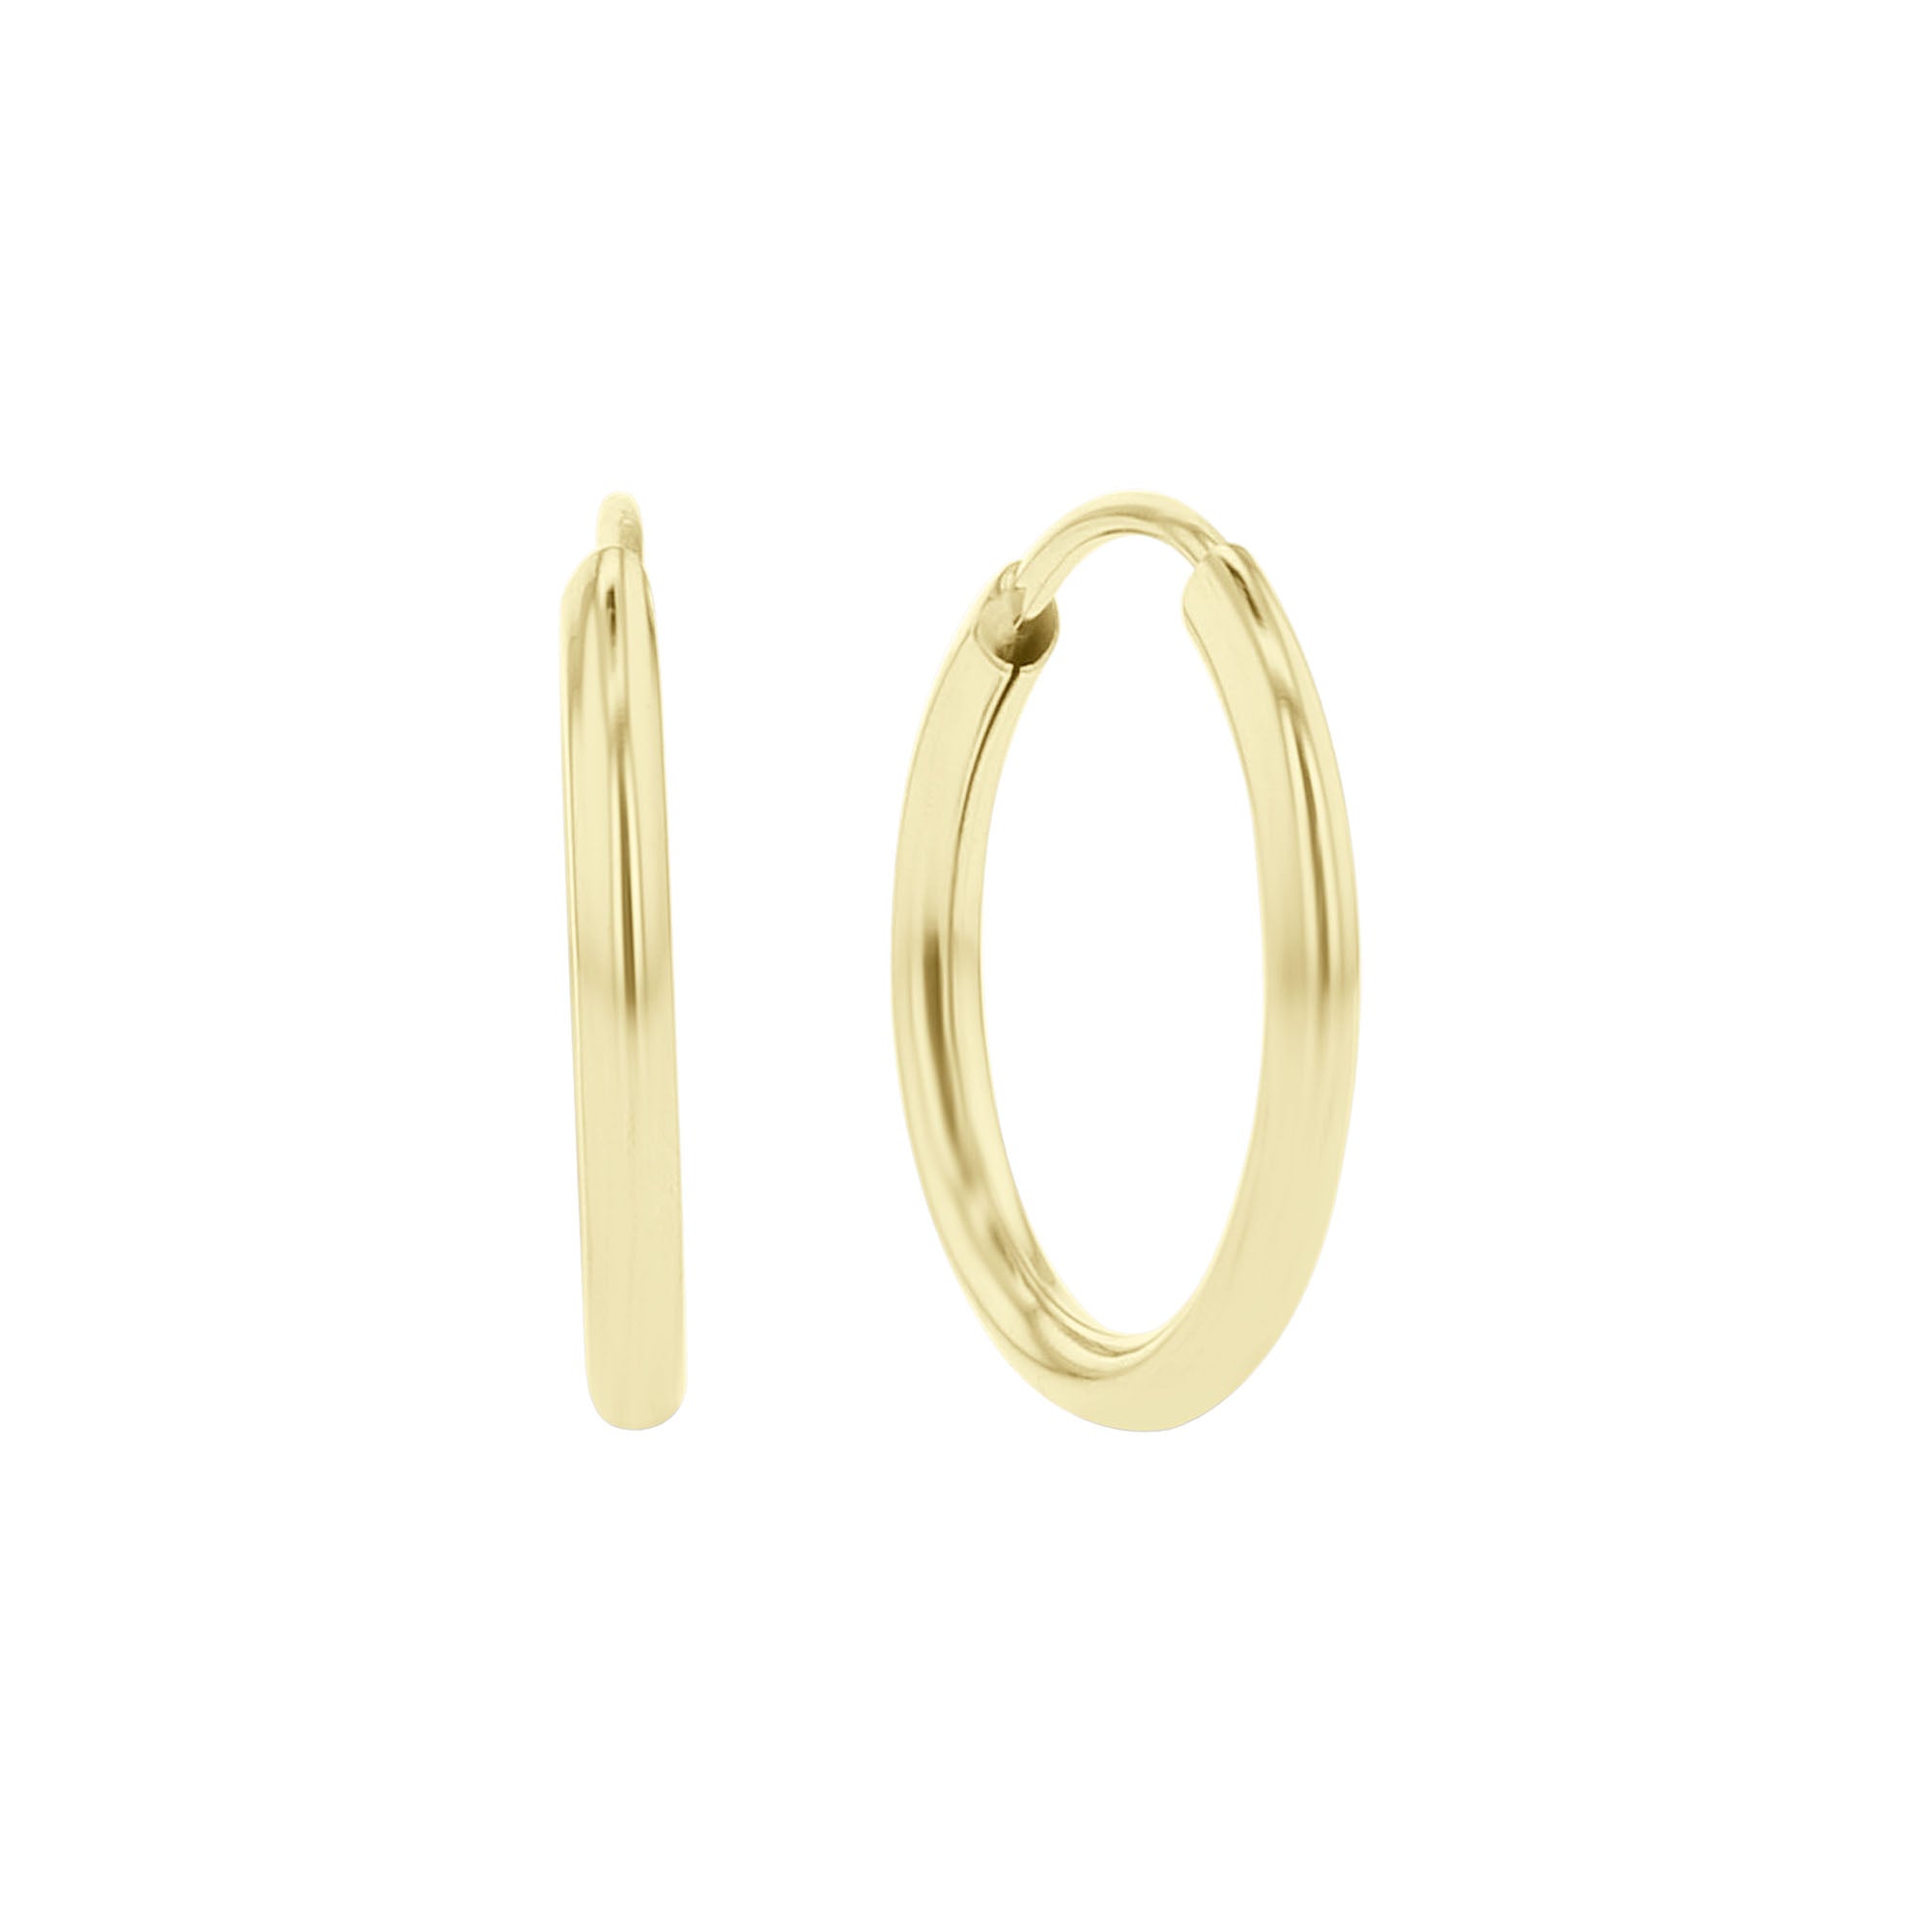 Chatham Gold Hoop Earrings - 12mm